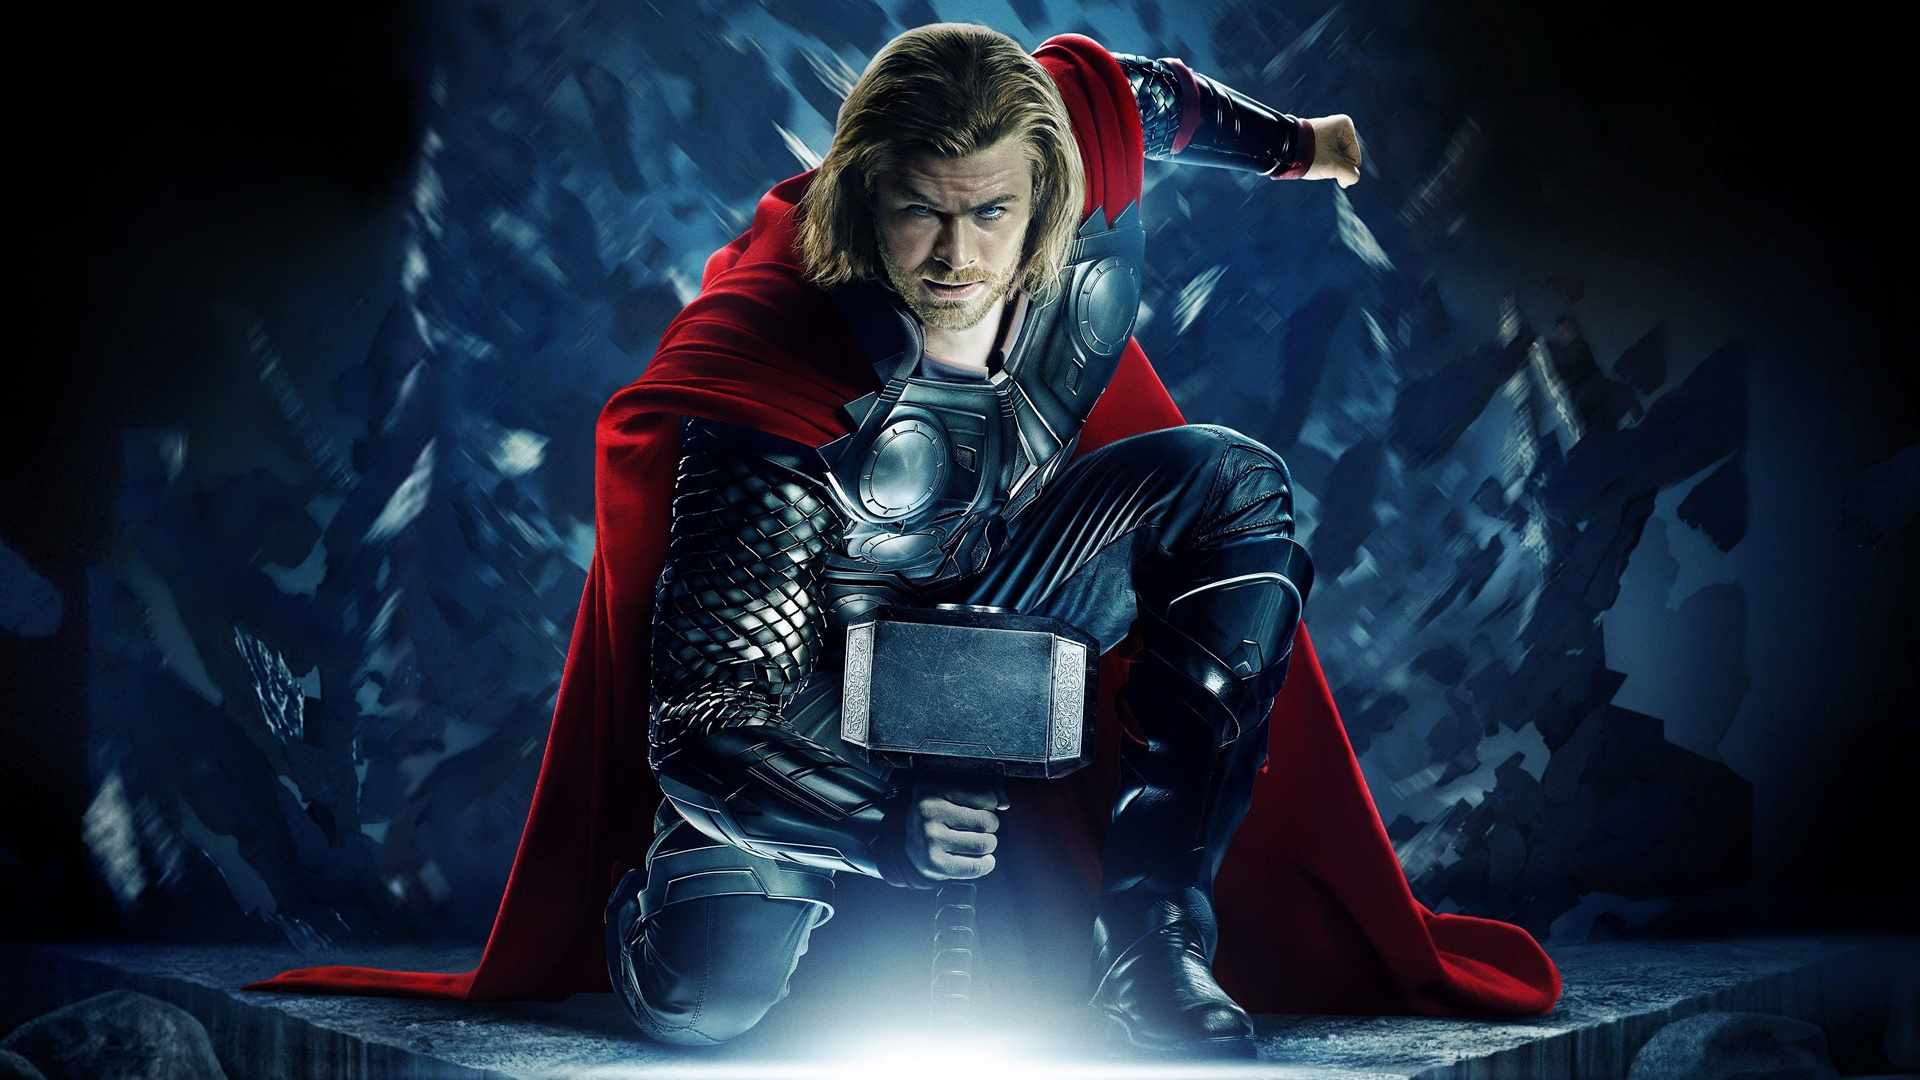 ثور (Thor) از شخصیت های استن لی